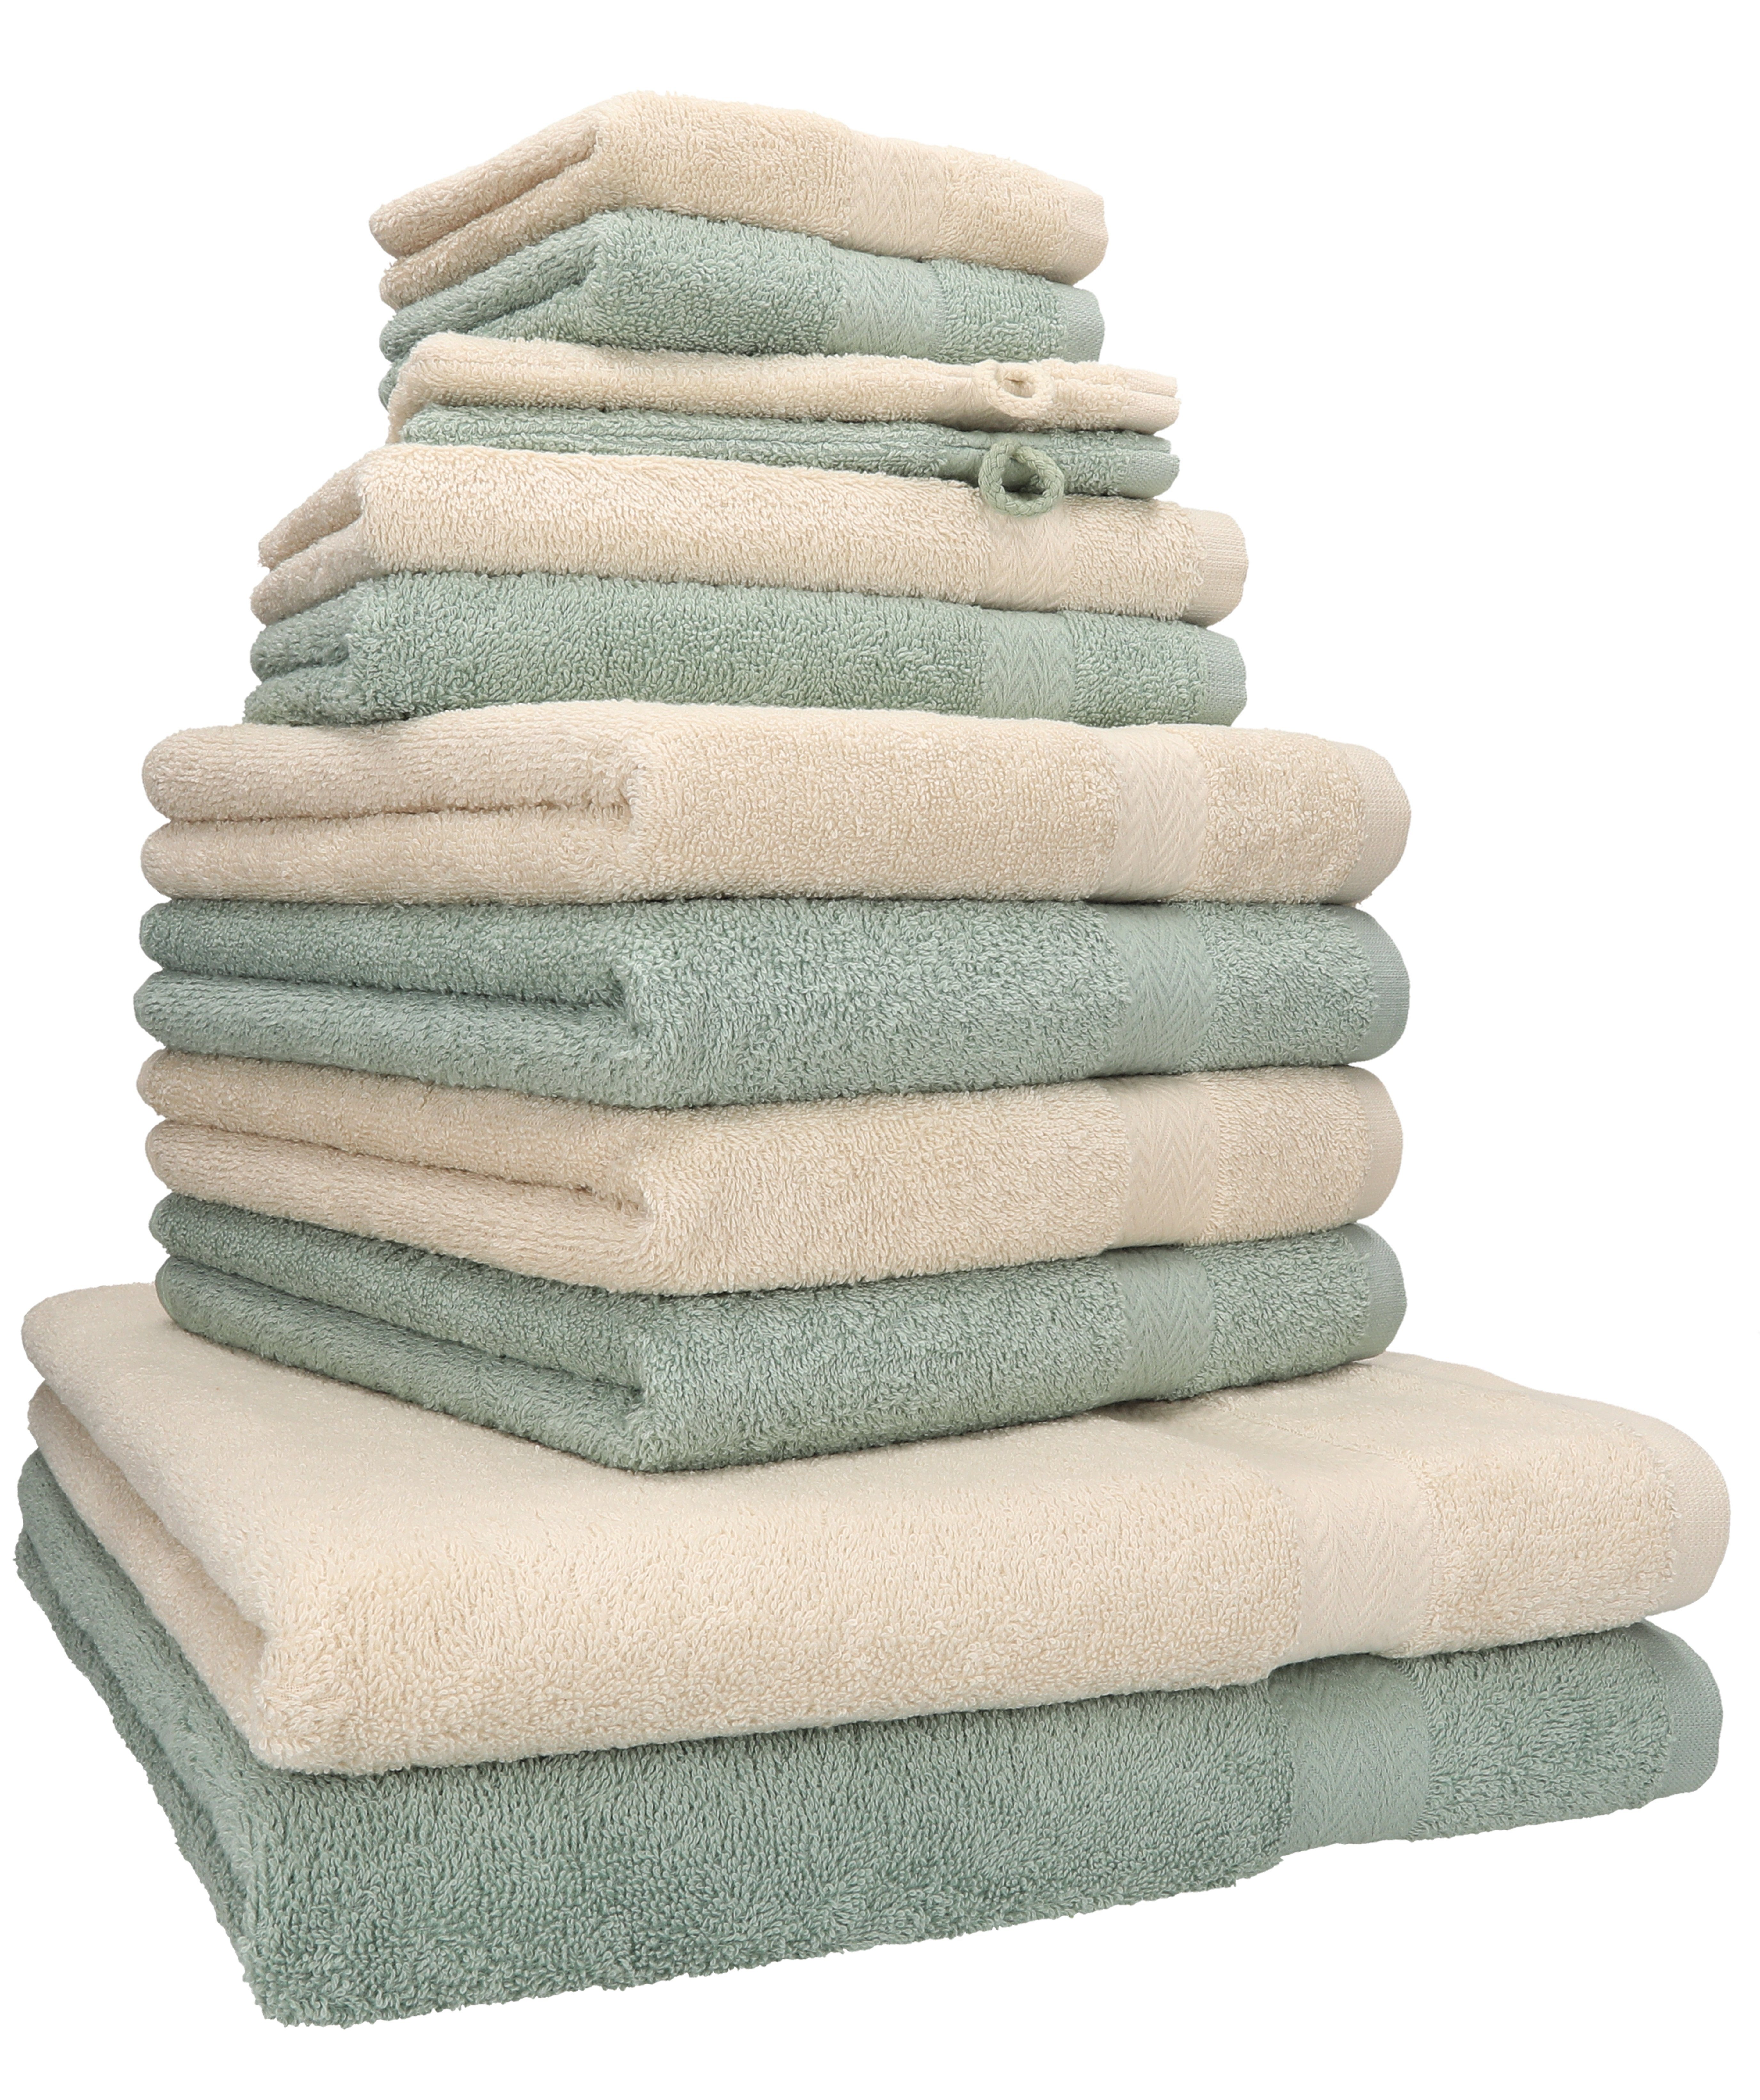 Betz Handtuch Set Handtuch Set Sand/heugrün, Premium 12-tlg. 100% (12-tlg) Baumwolle, Farbe